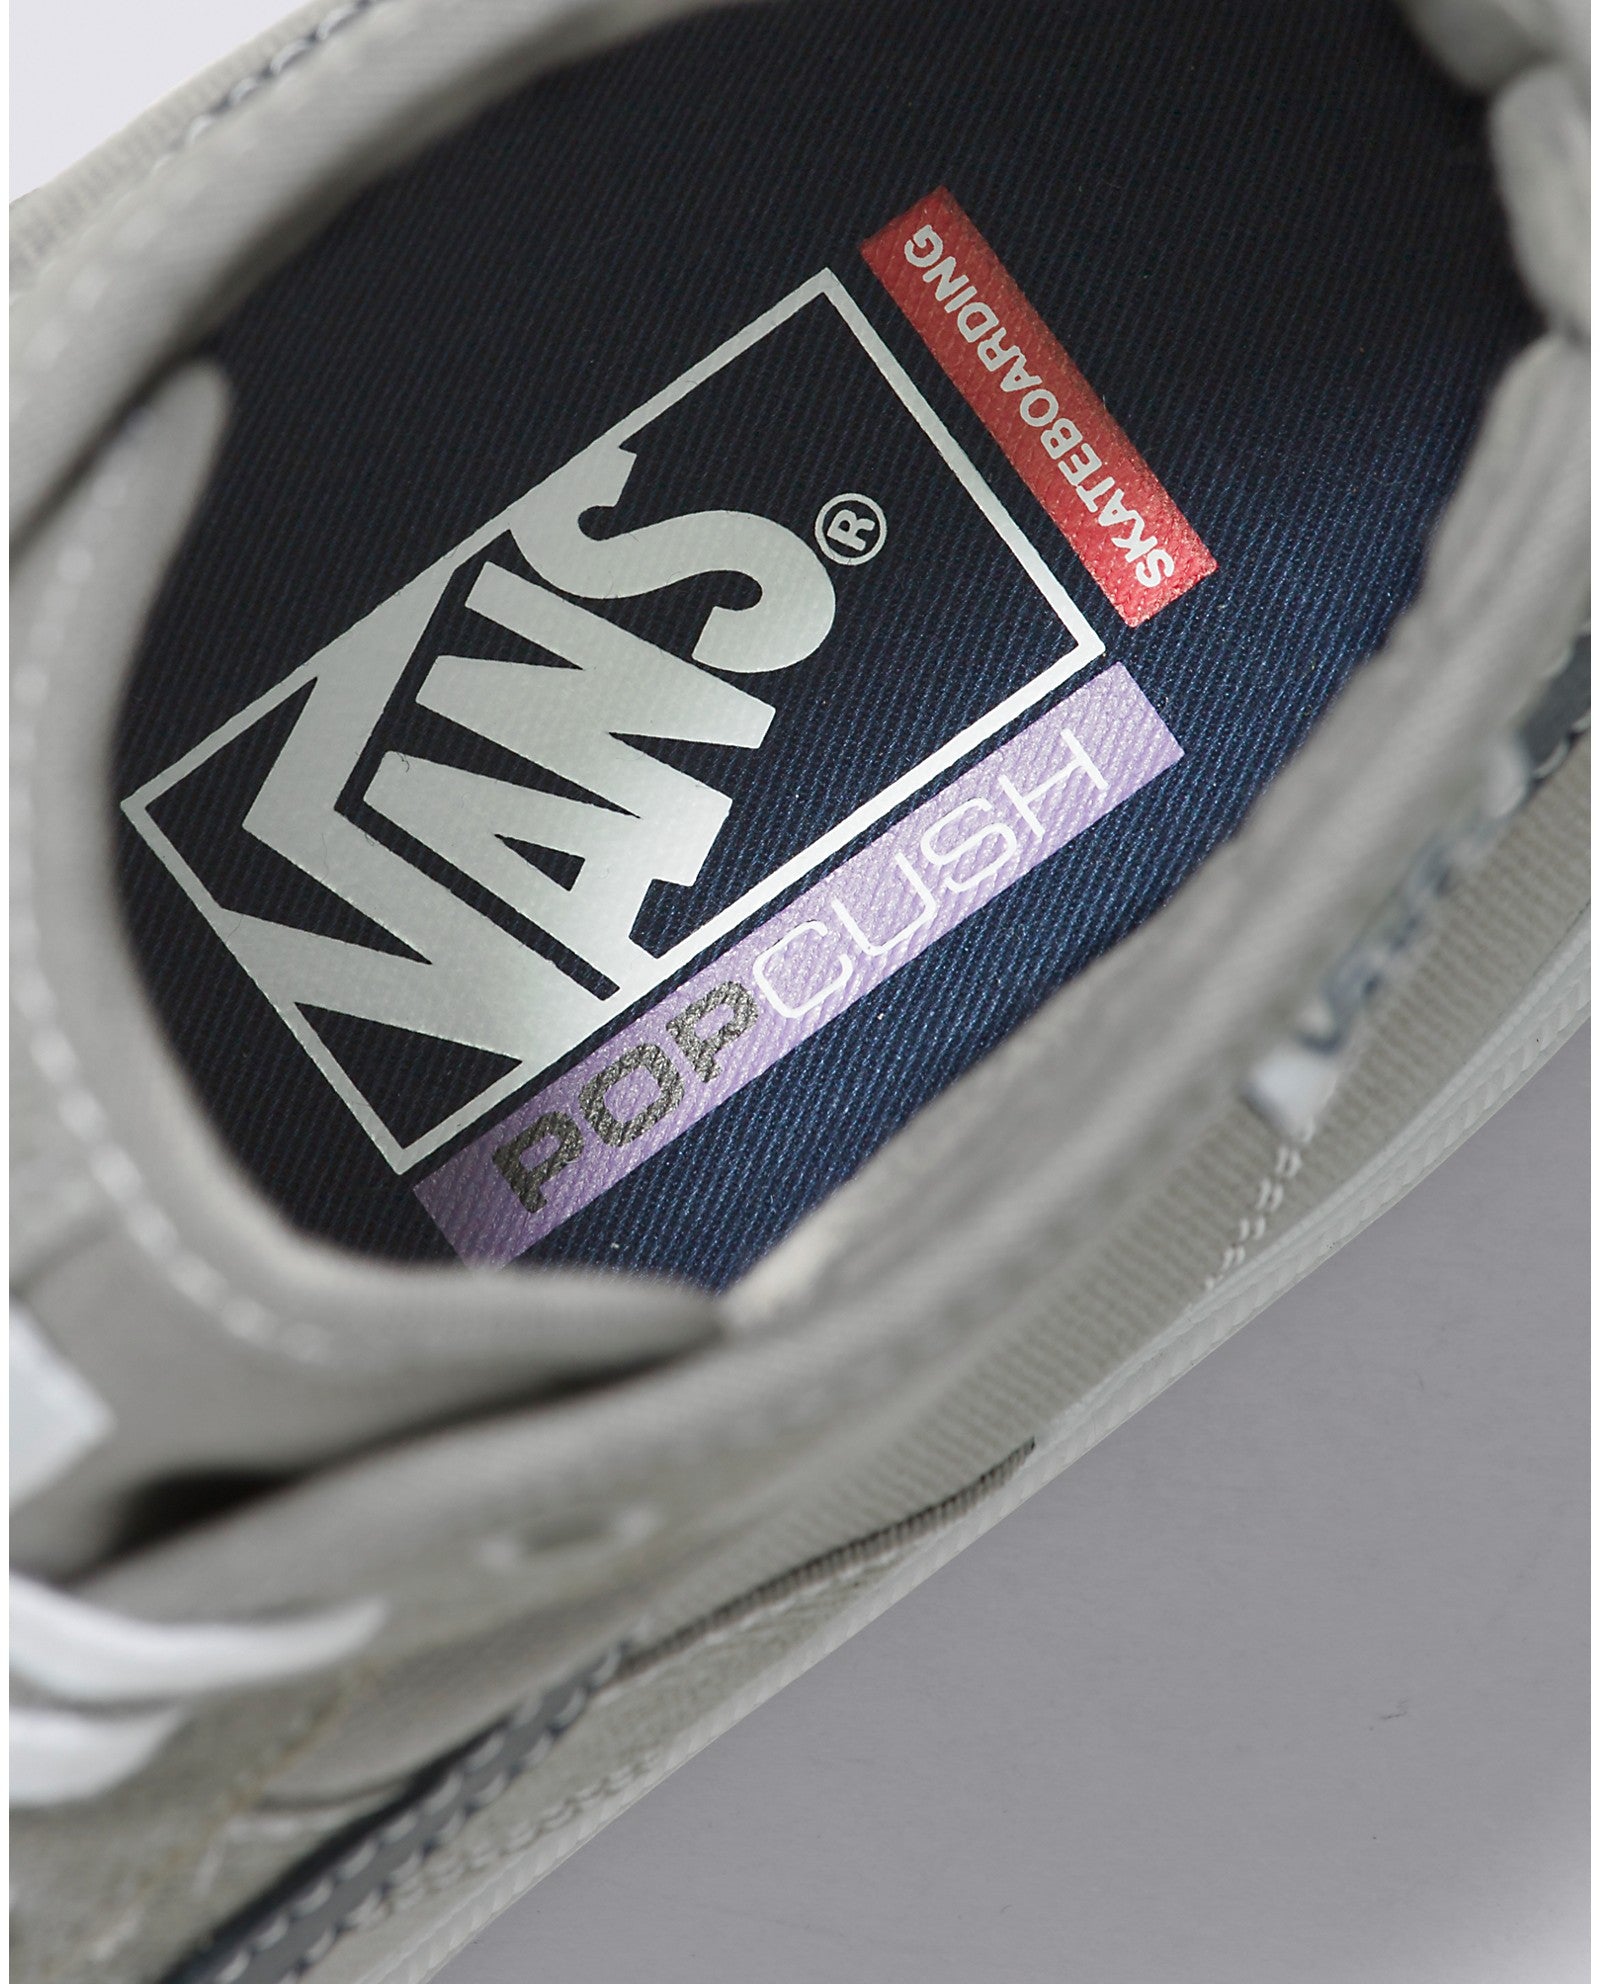 Grey/Blue Gilbert Crockett High Vans Skate Shoe Detail